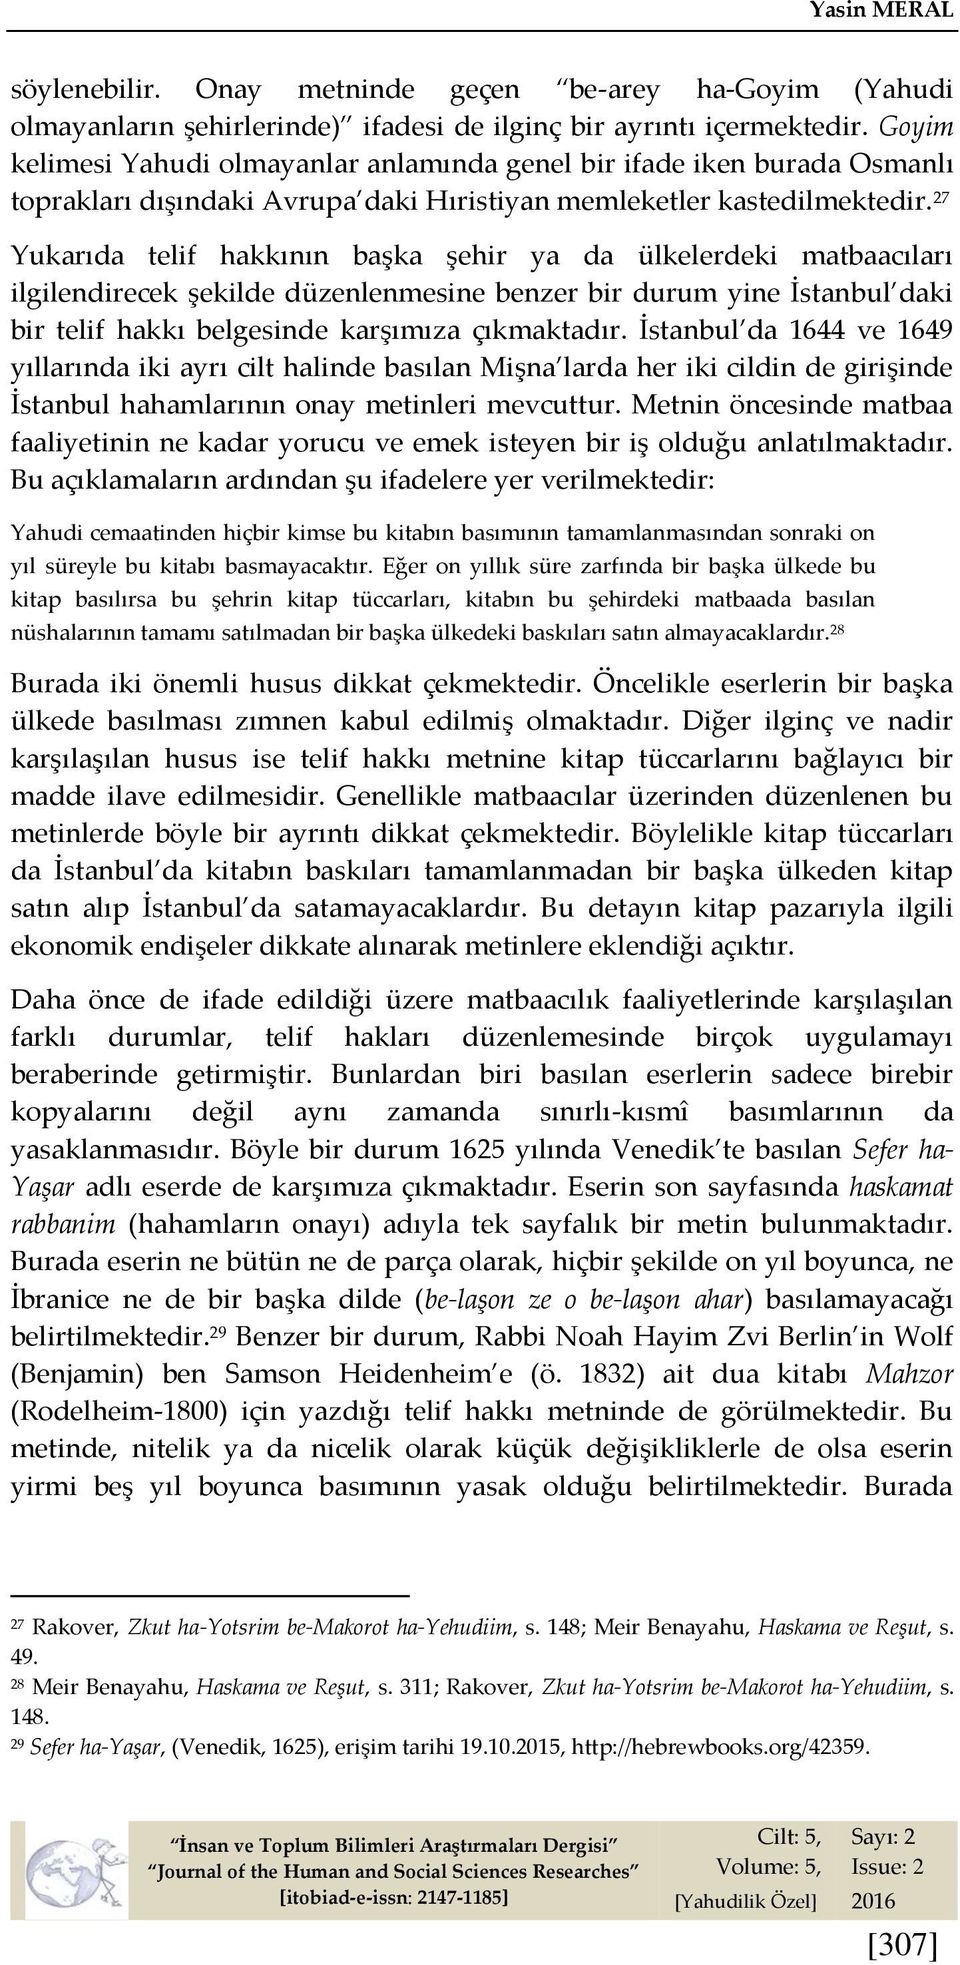 27 Yukarıda telif hakkının başka şehir ya da ülkelerdeki matbaacıları ilgilendirecek şekilde düzenlenmesine benzer bir durum yine İstanbul daki bir telif hakkı belgesinde karşımıza çıkmaktadır.